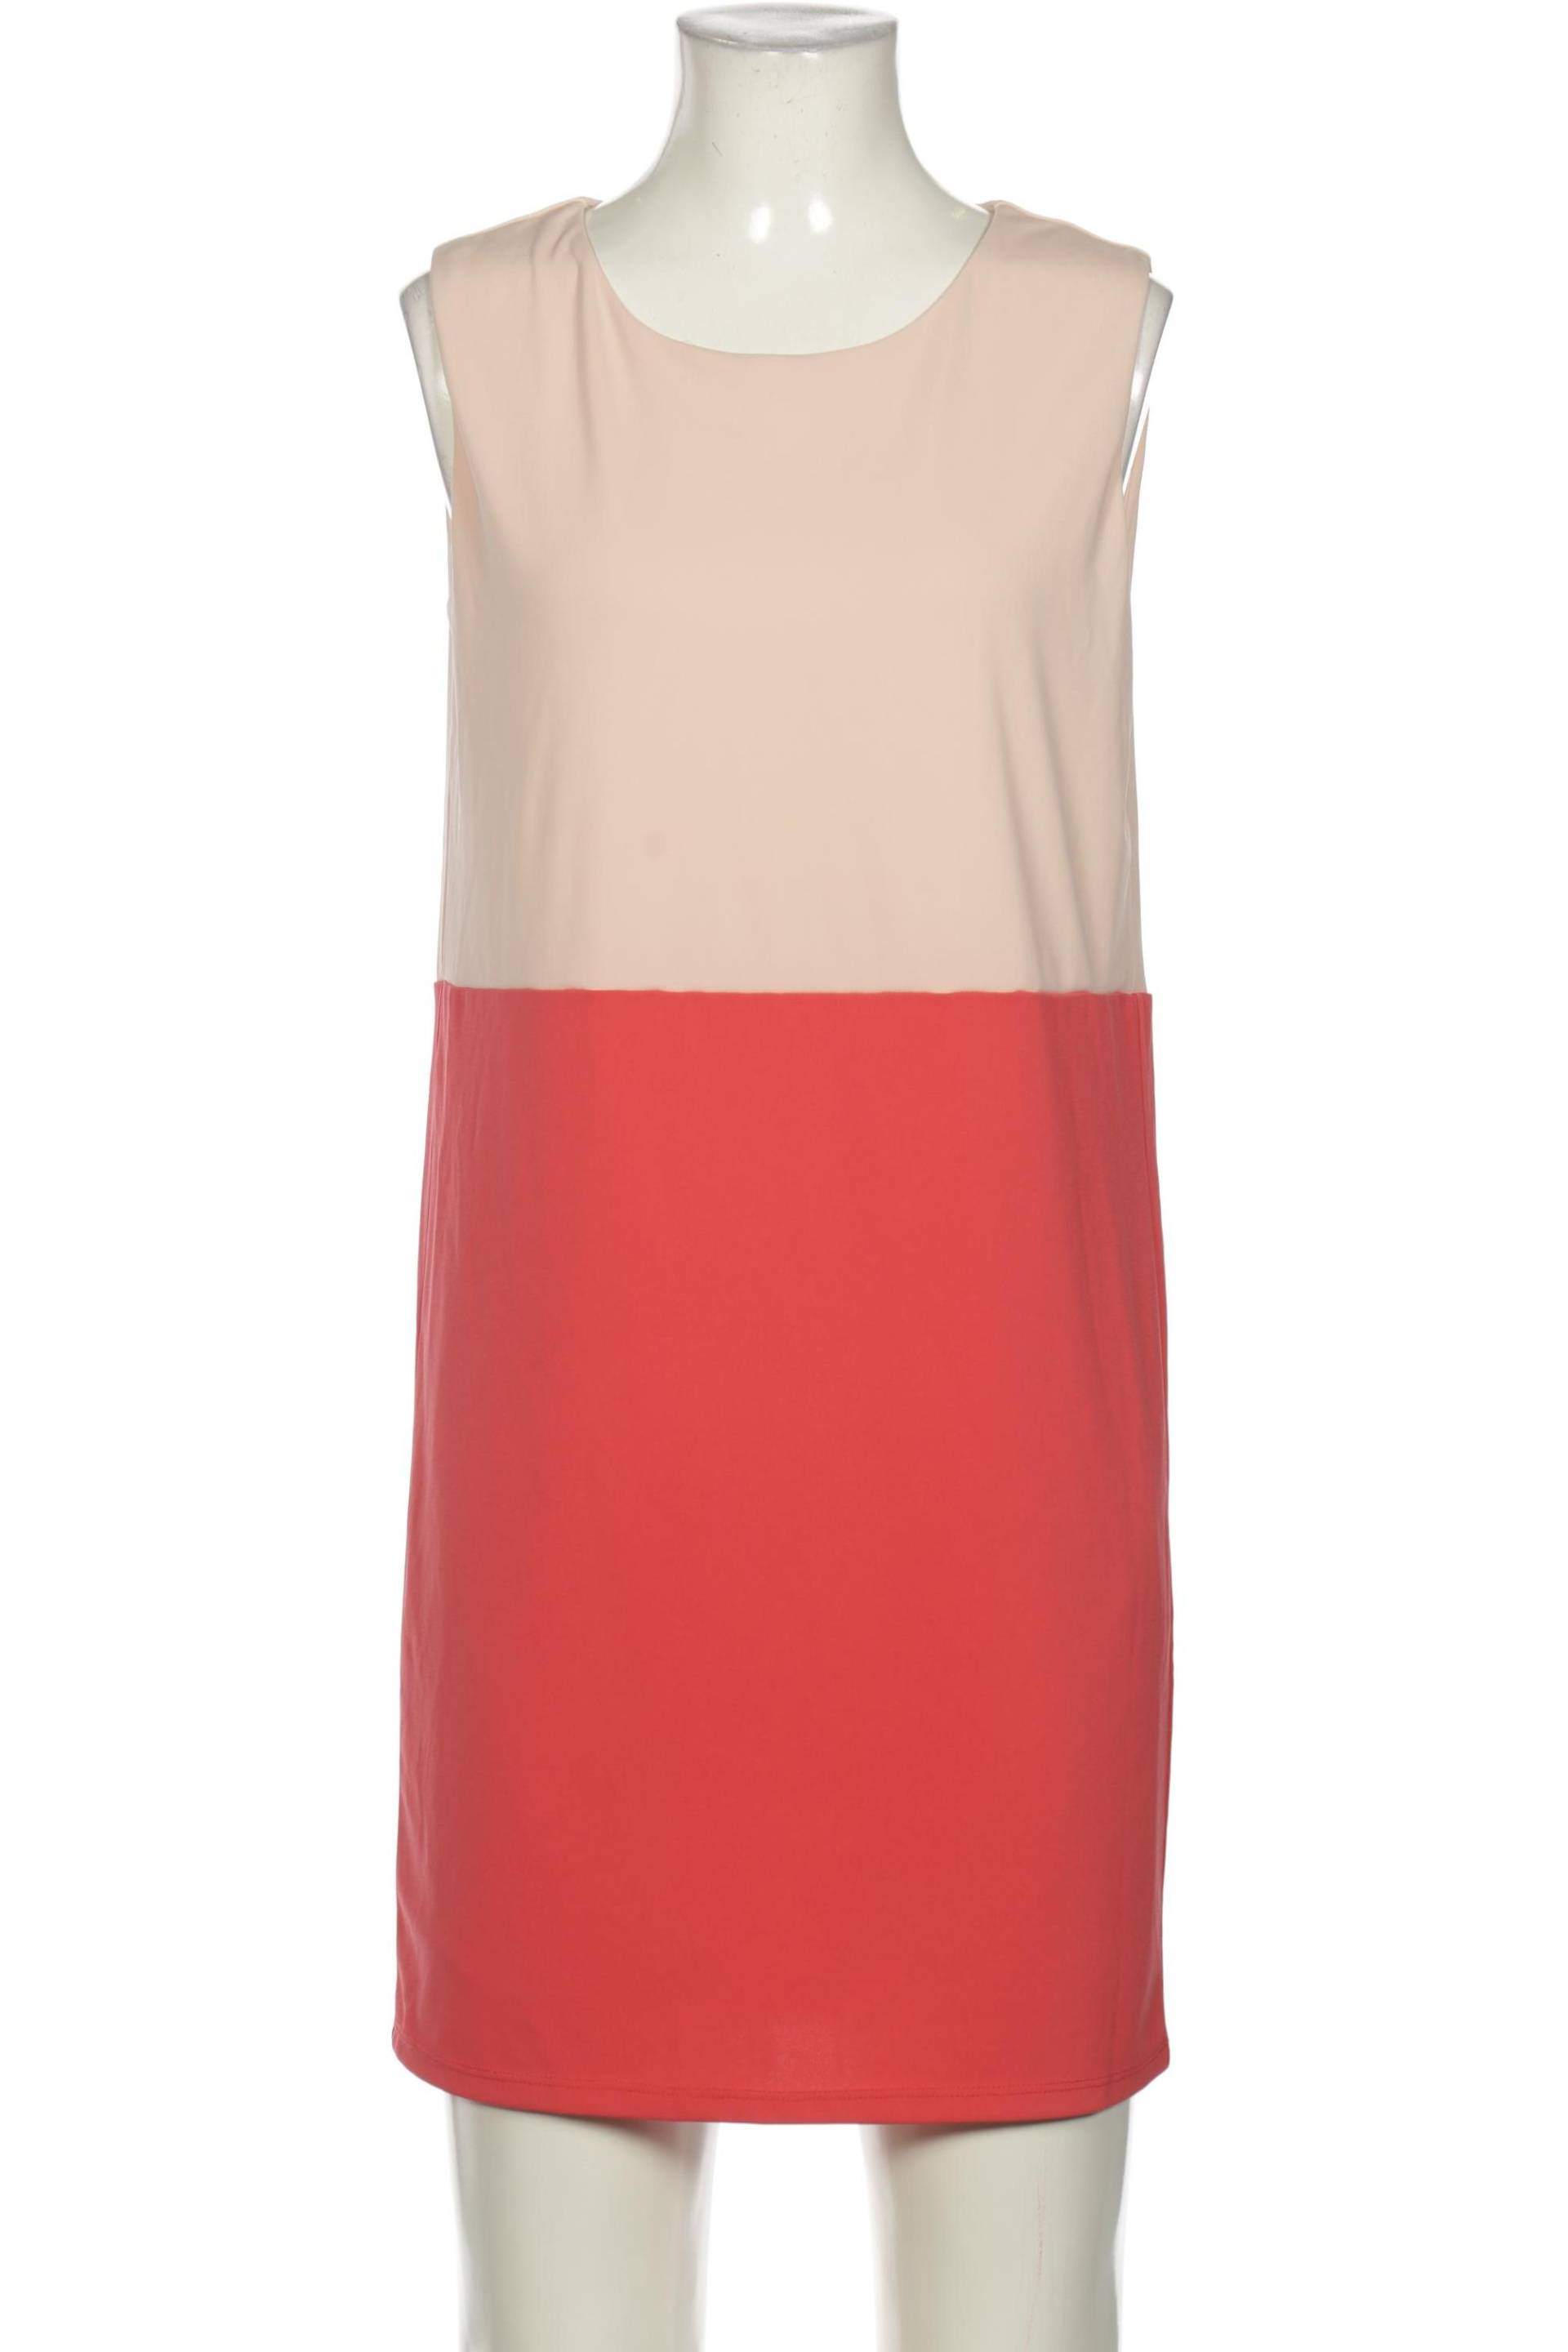 Esprit Damen Kleid, rot, Gr. 34 von Esprit